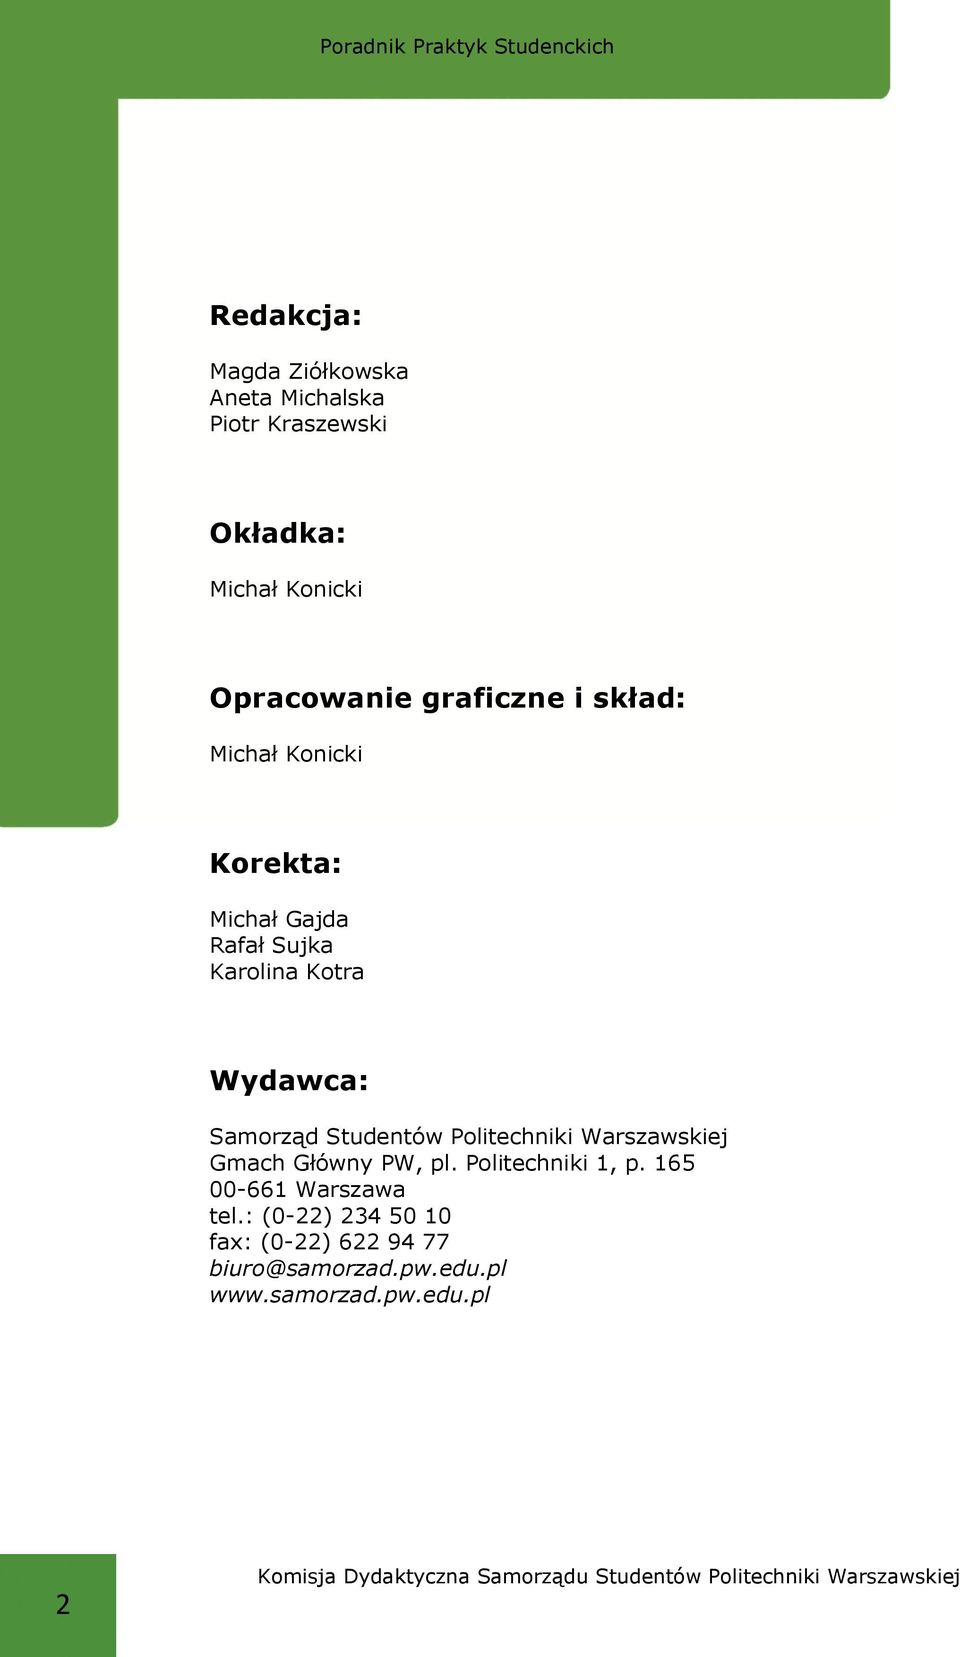 Główny PW, pl. Politechniki 1, p. 165 00-661 Warszawa tel.